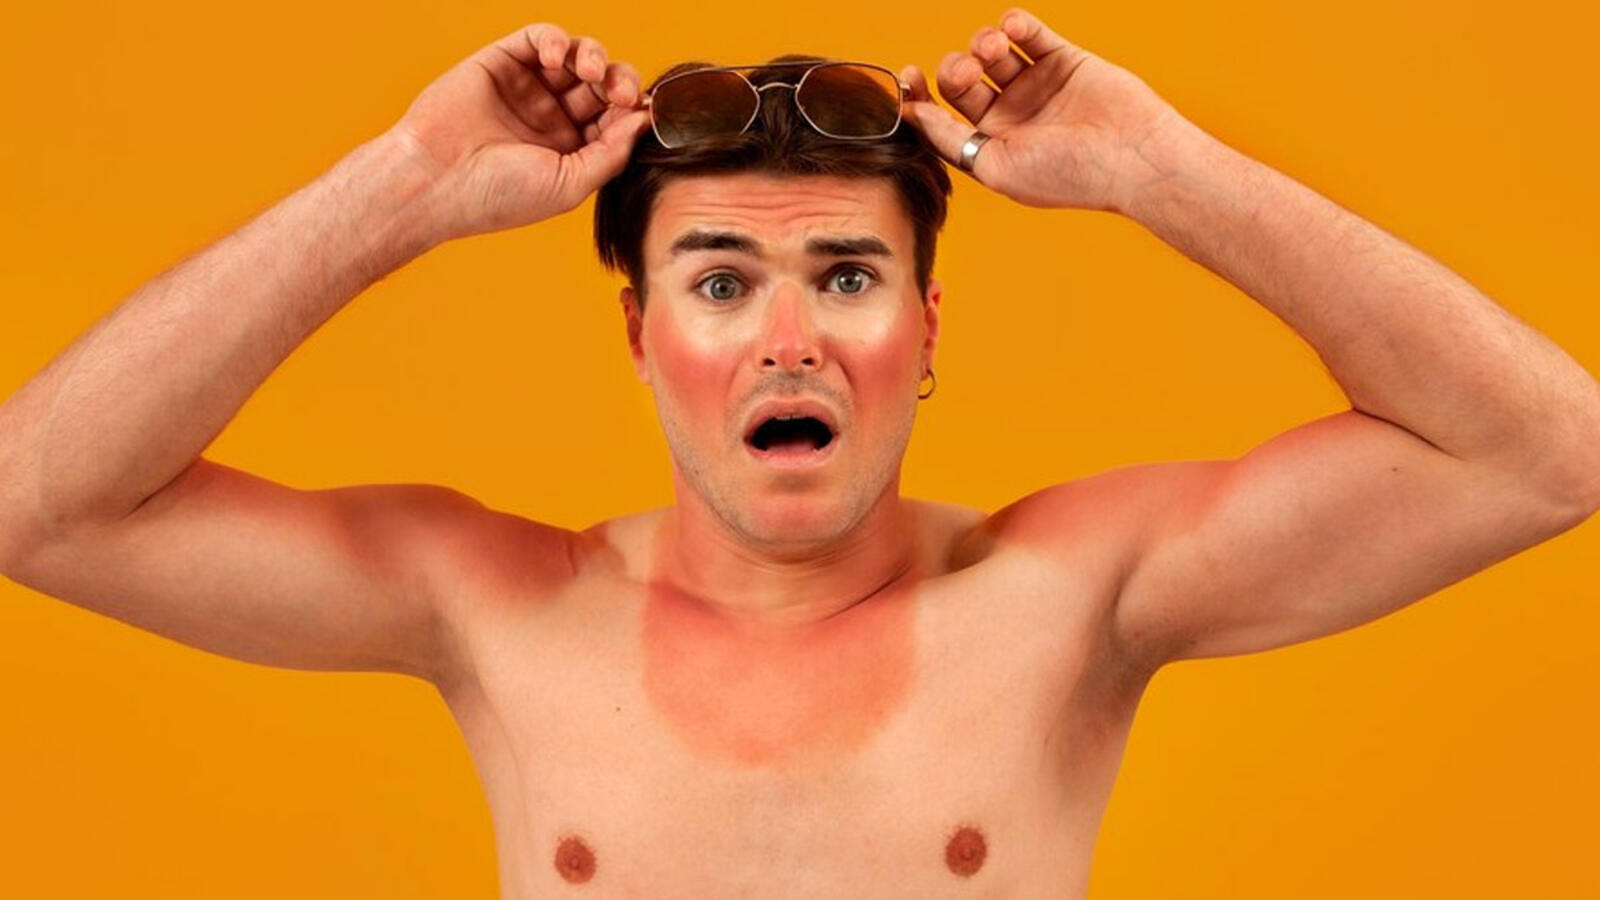 Sun tan removal Ubtan : धूप से आने के बाद त्वचा पर लगा लें यह उबटन, नहीं होगी टैनिंग